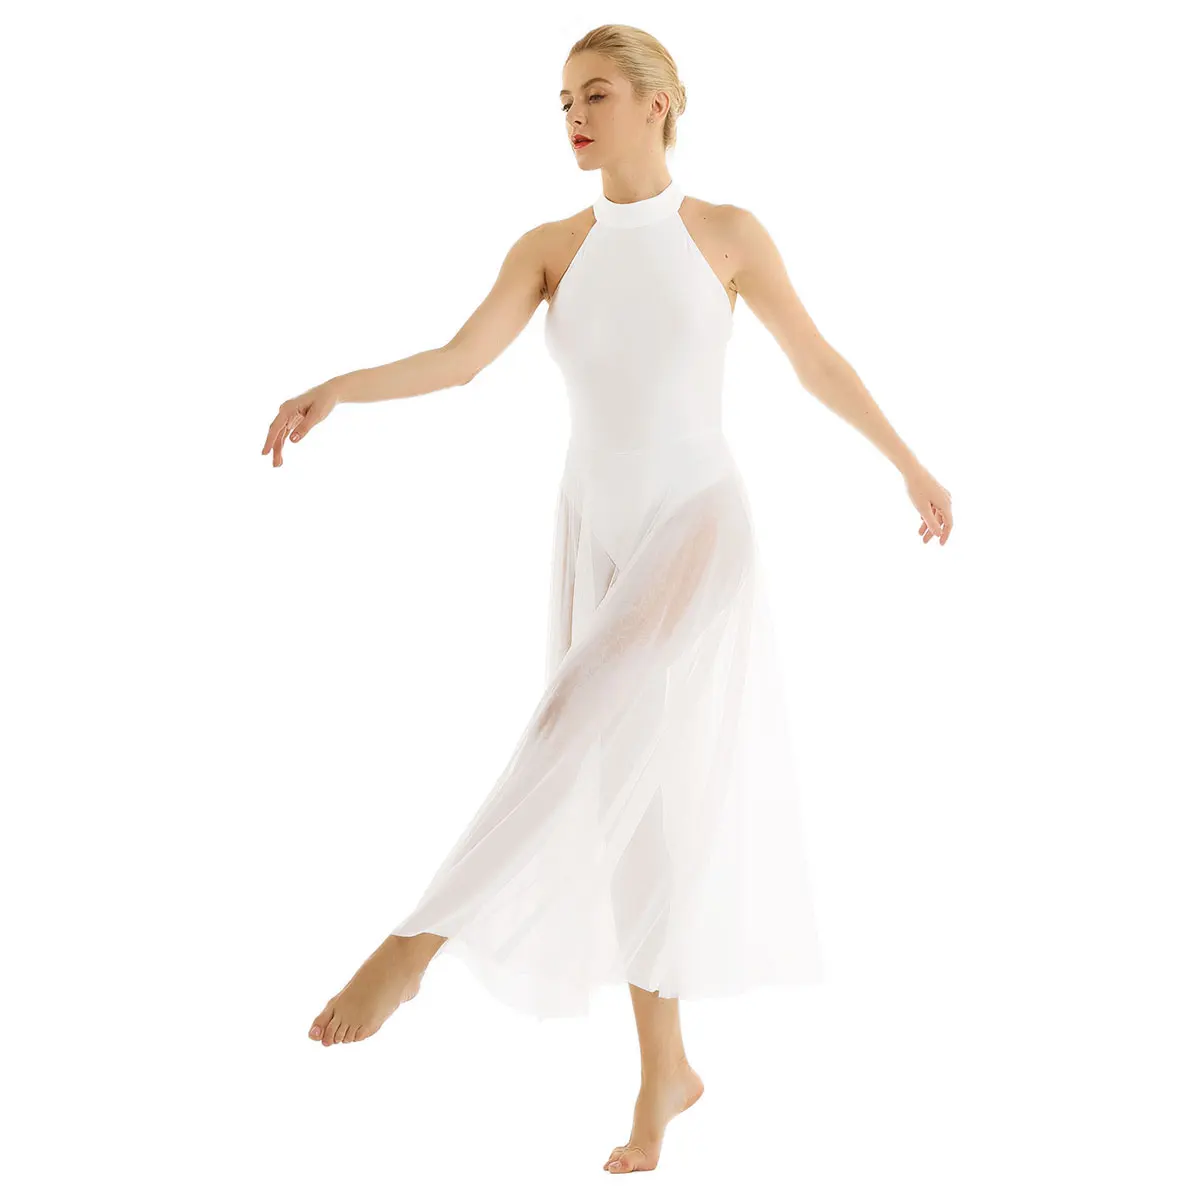 Женские костюмы для лирических танцев, балетное платье, современное трико, балетное боди с сетчатой юбкой, балетные трико с имитацией шеи